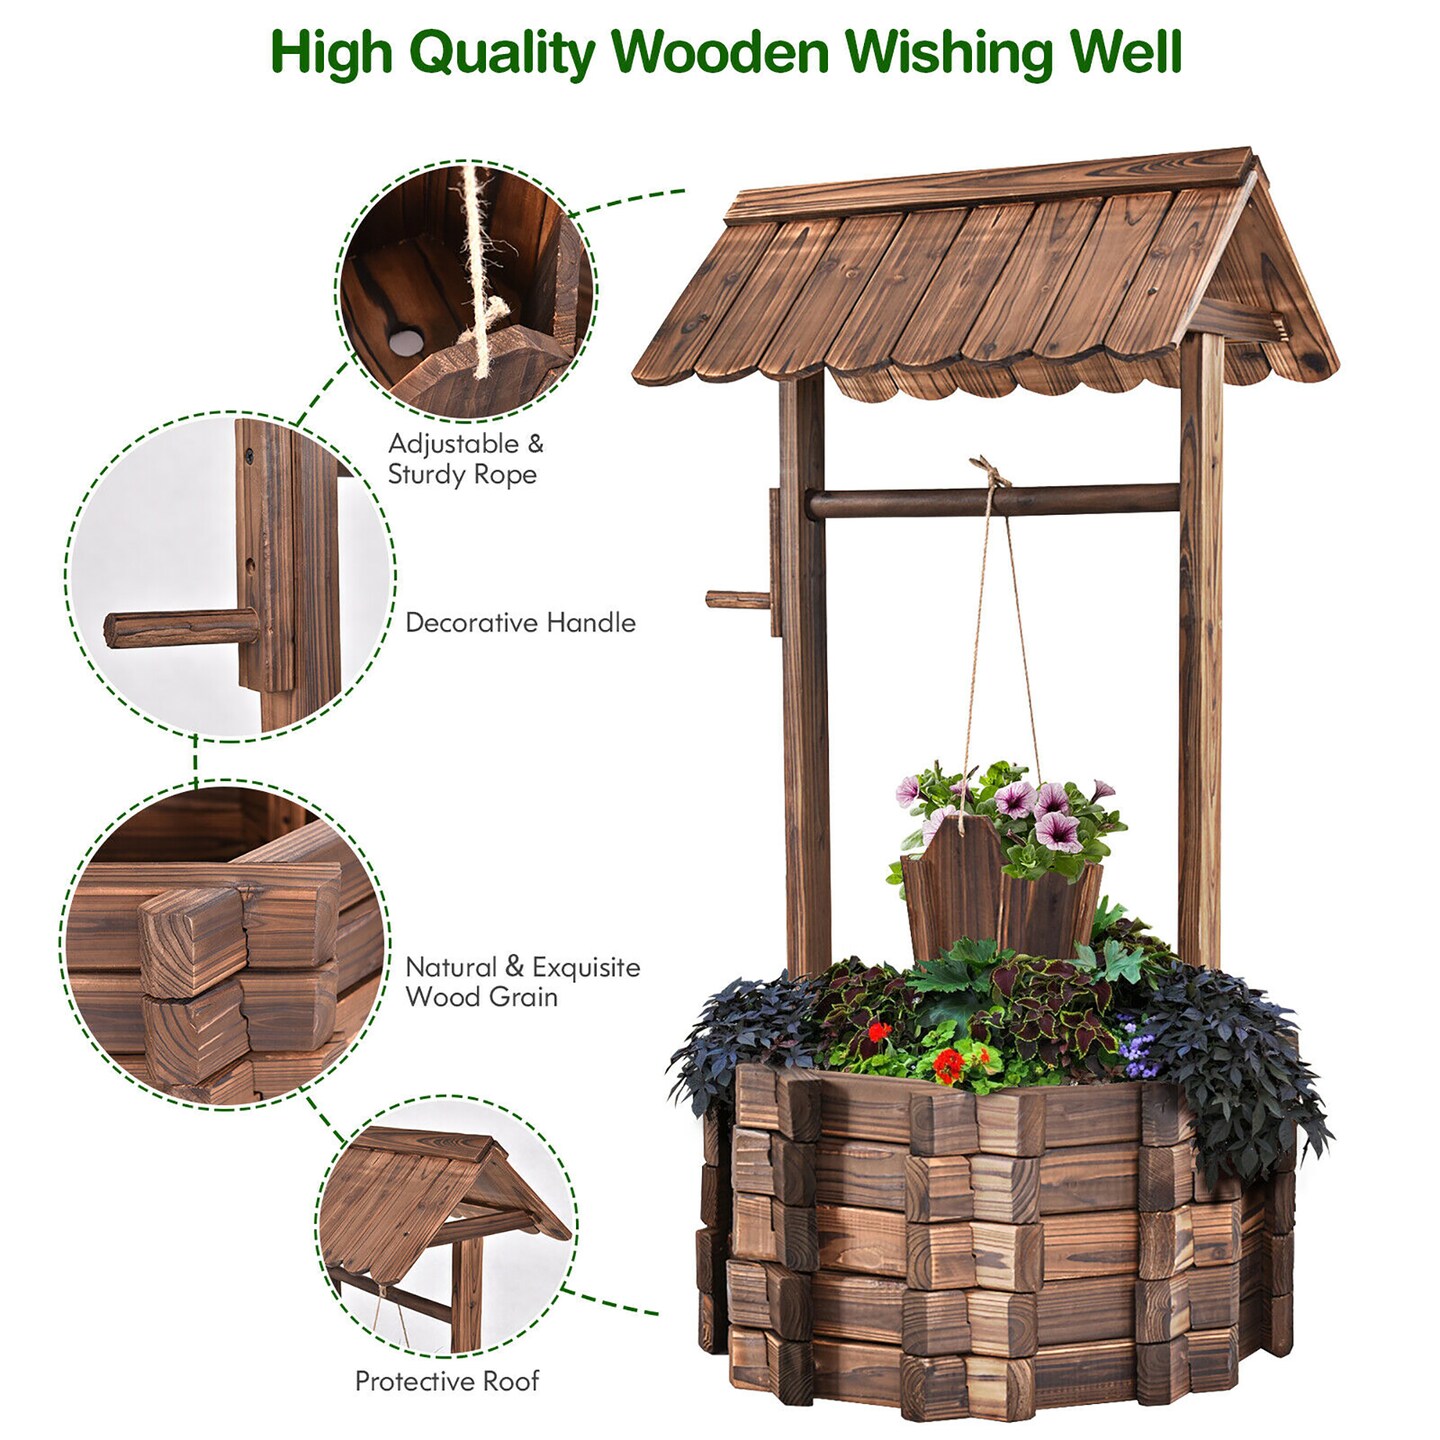 Costway Outdoor Wooden Wishing Well Bucket Flower Plants Planter Patio Garden Home Decor